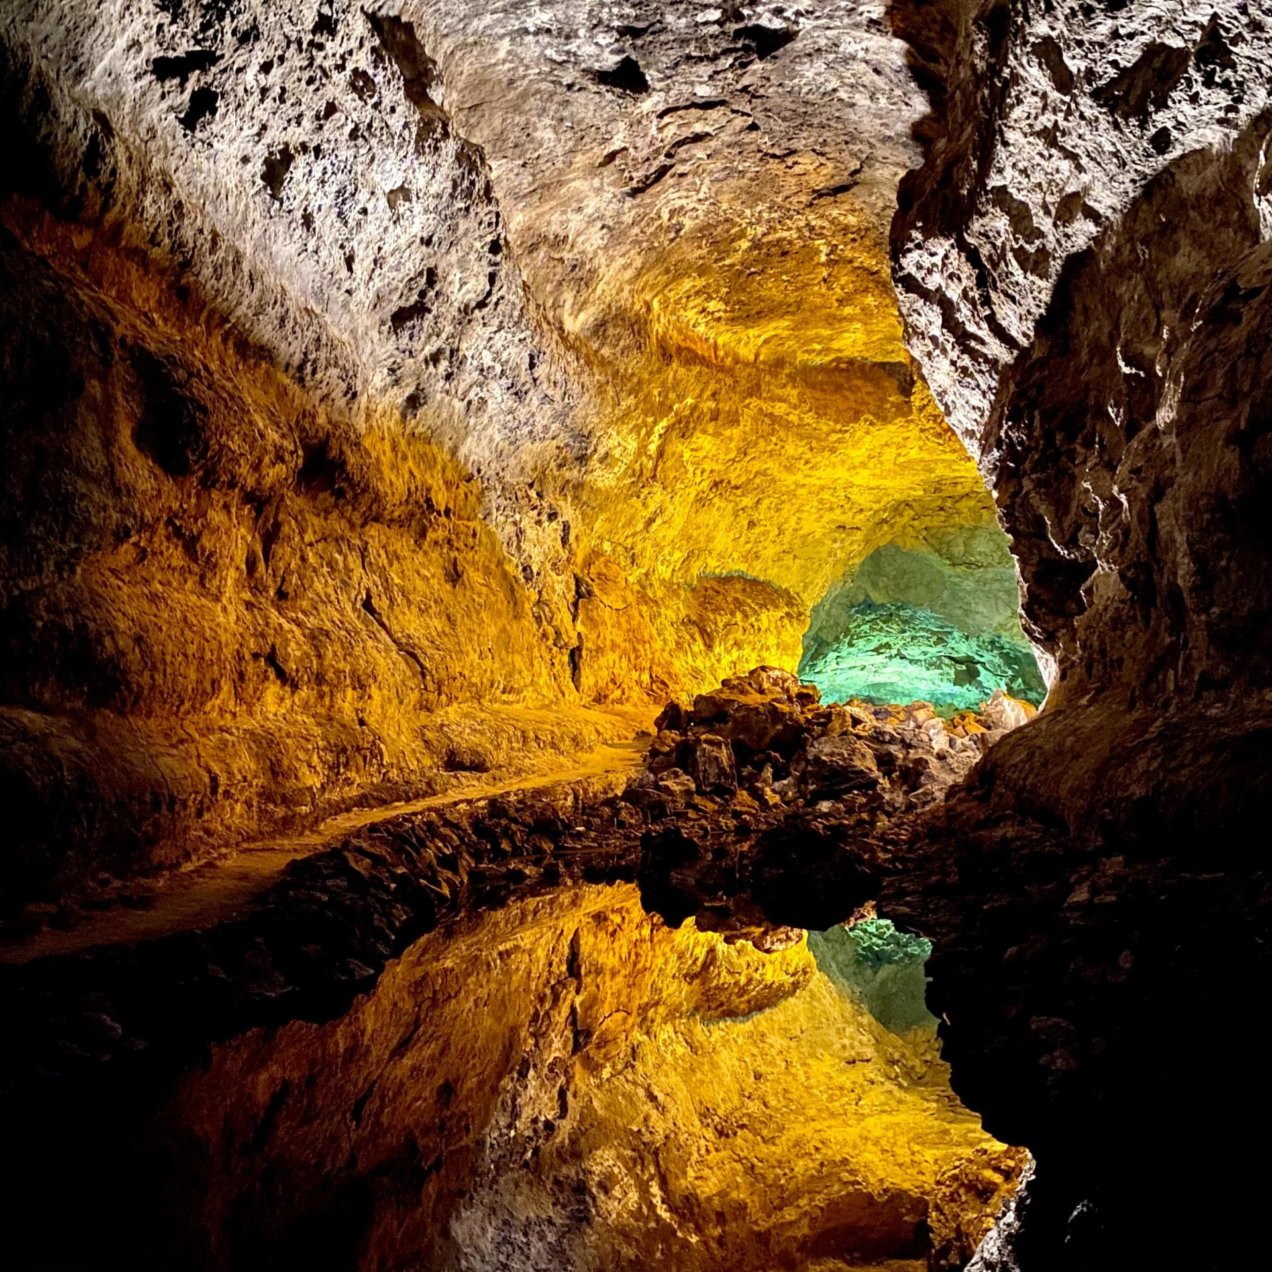 The Cueva de los Verdes